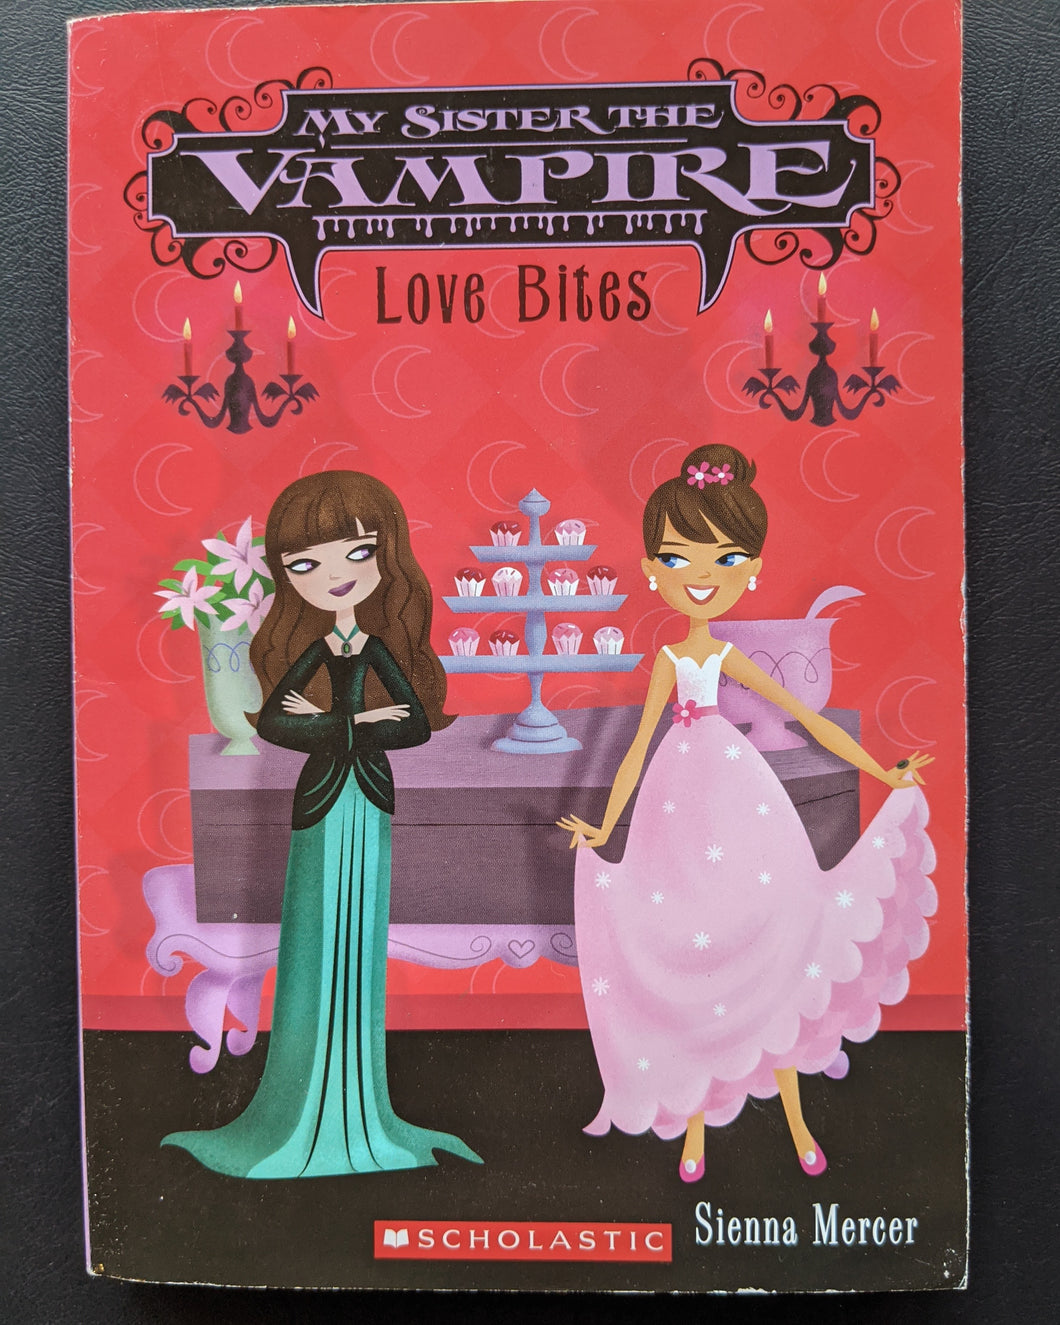 Love Bites (My Sister the Vampire #6) by Sienna Mercer